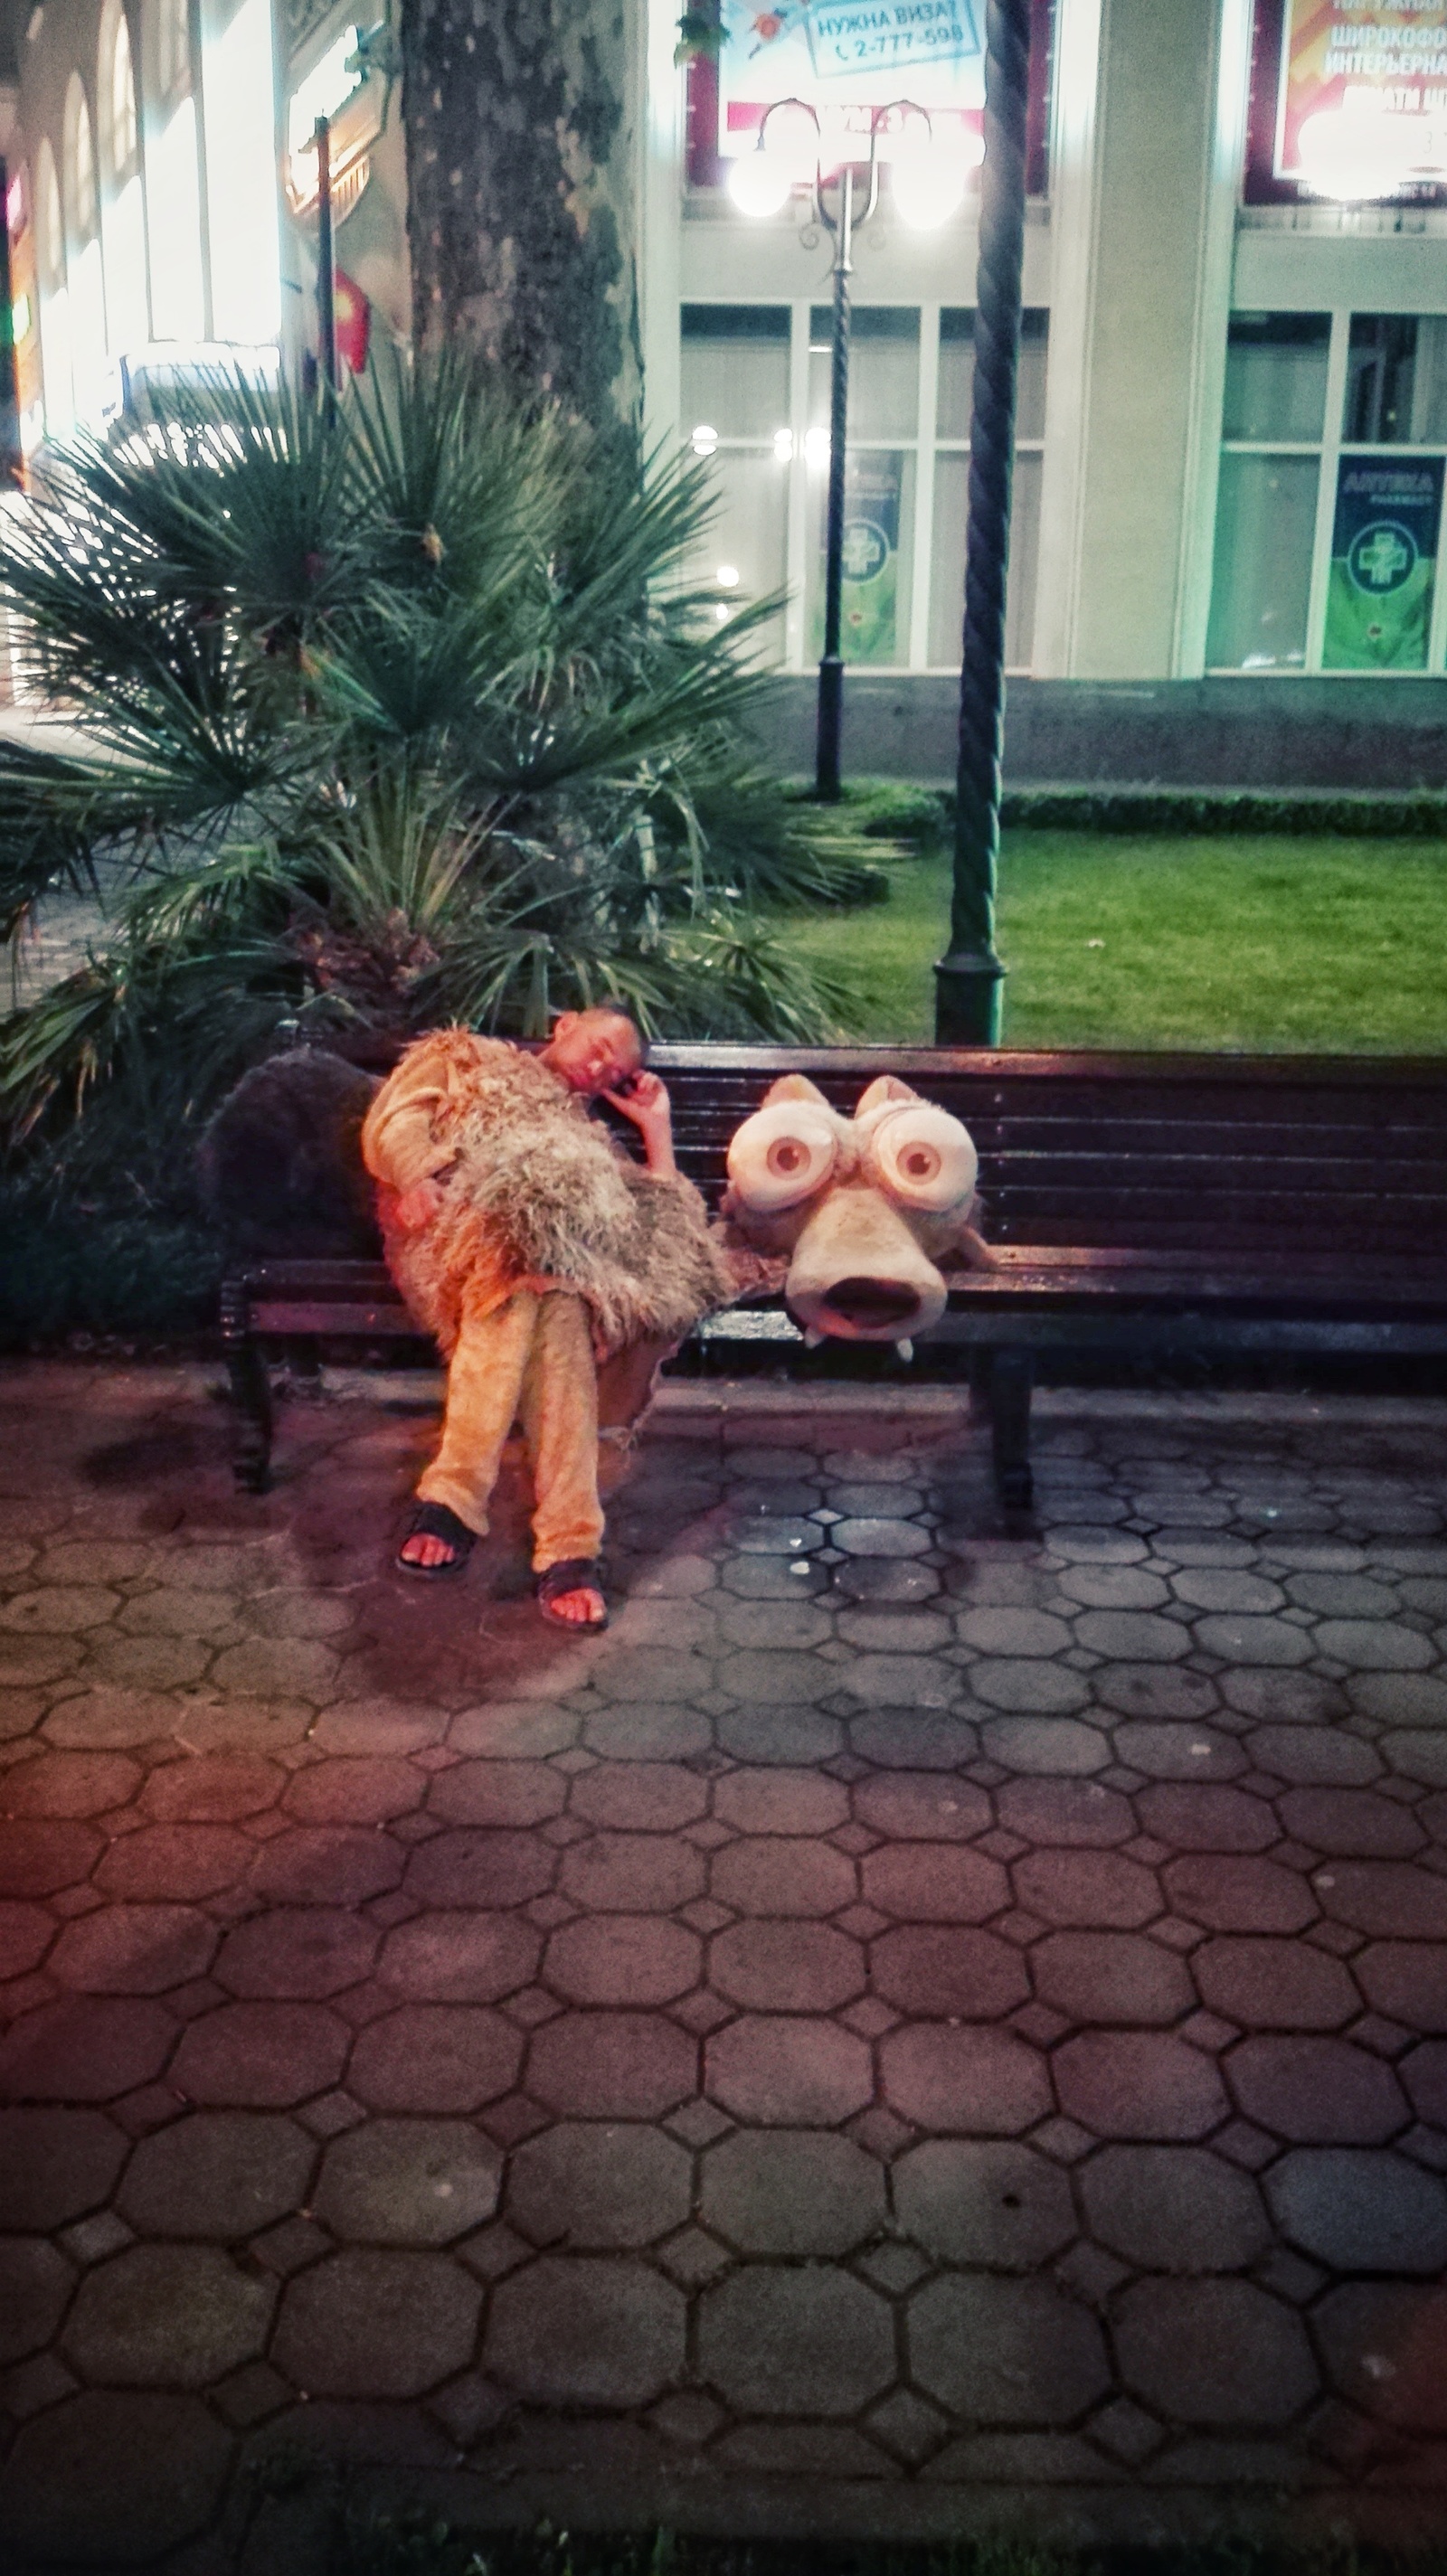 Sleeping tired squirrels - My, Sochi, Squirrel, ice Age, Dream